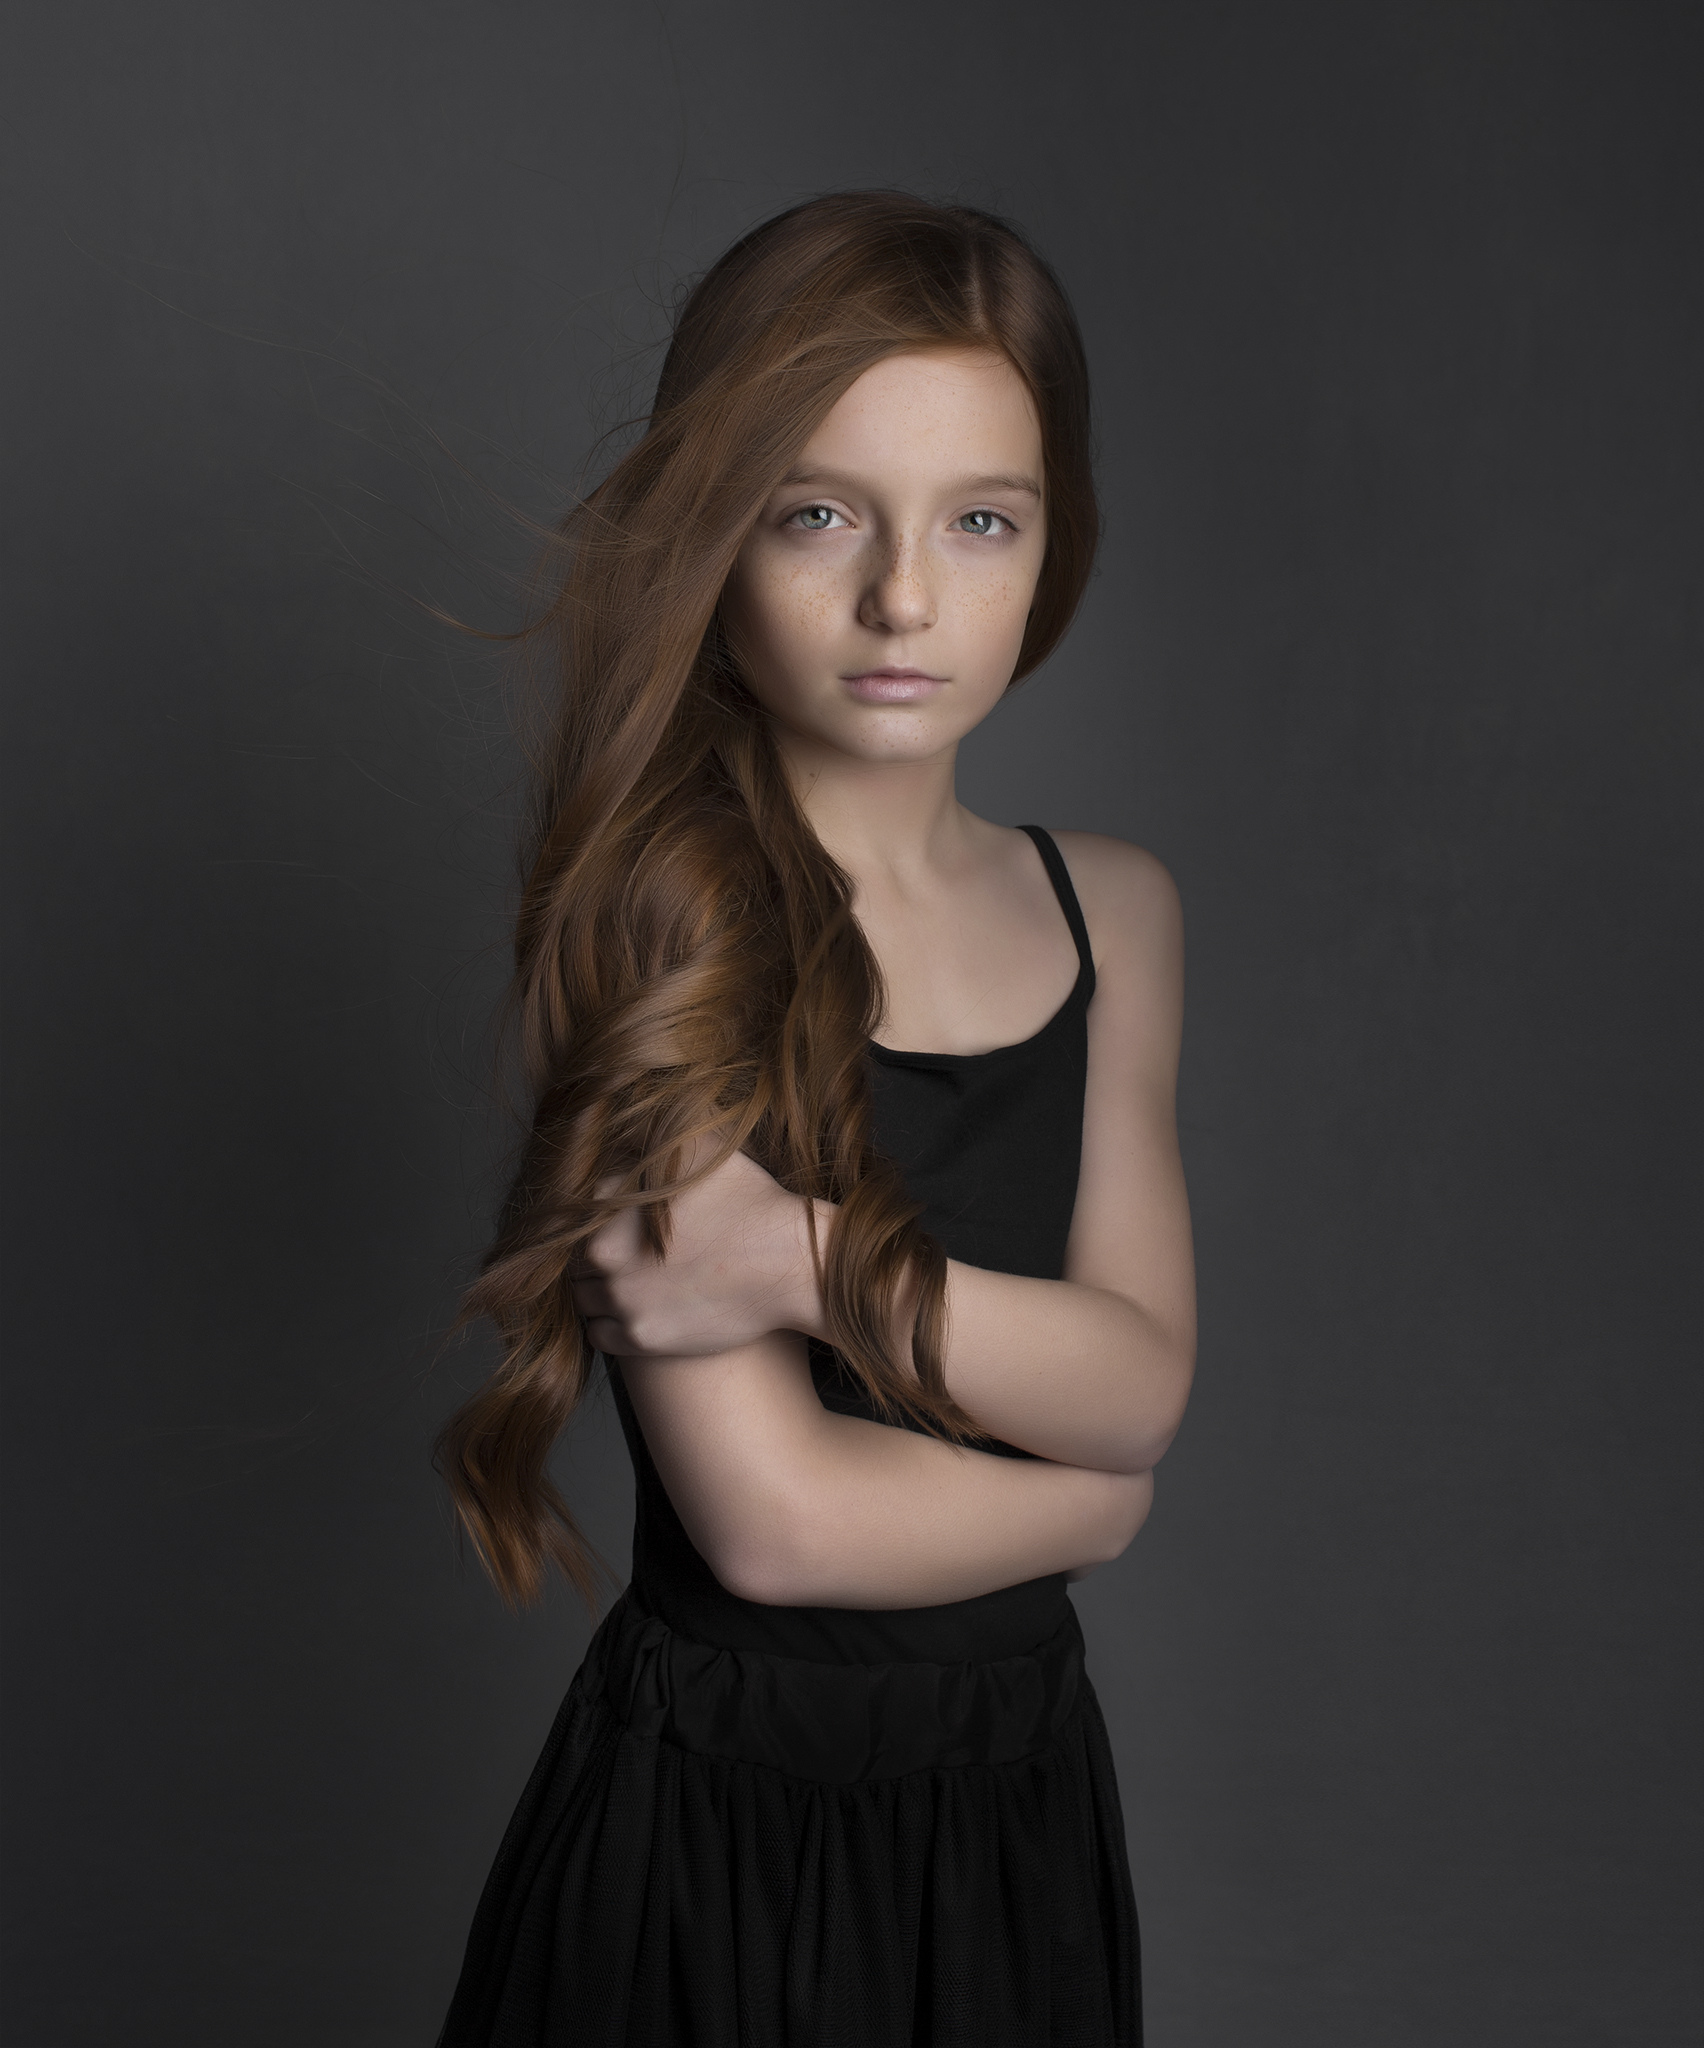 elizabethg_photography_hertfordshire_fineart_child_portrait_model_morgan_4.jpg